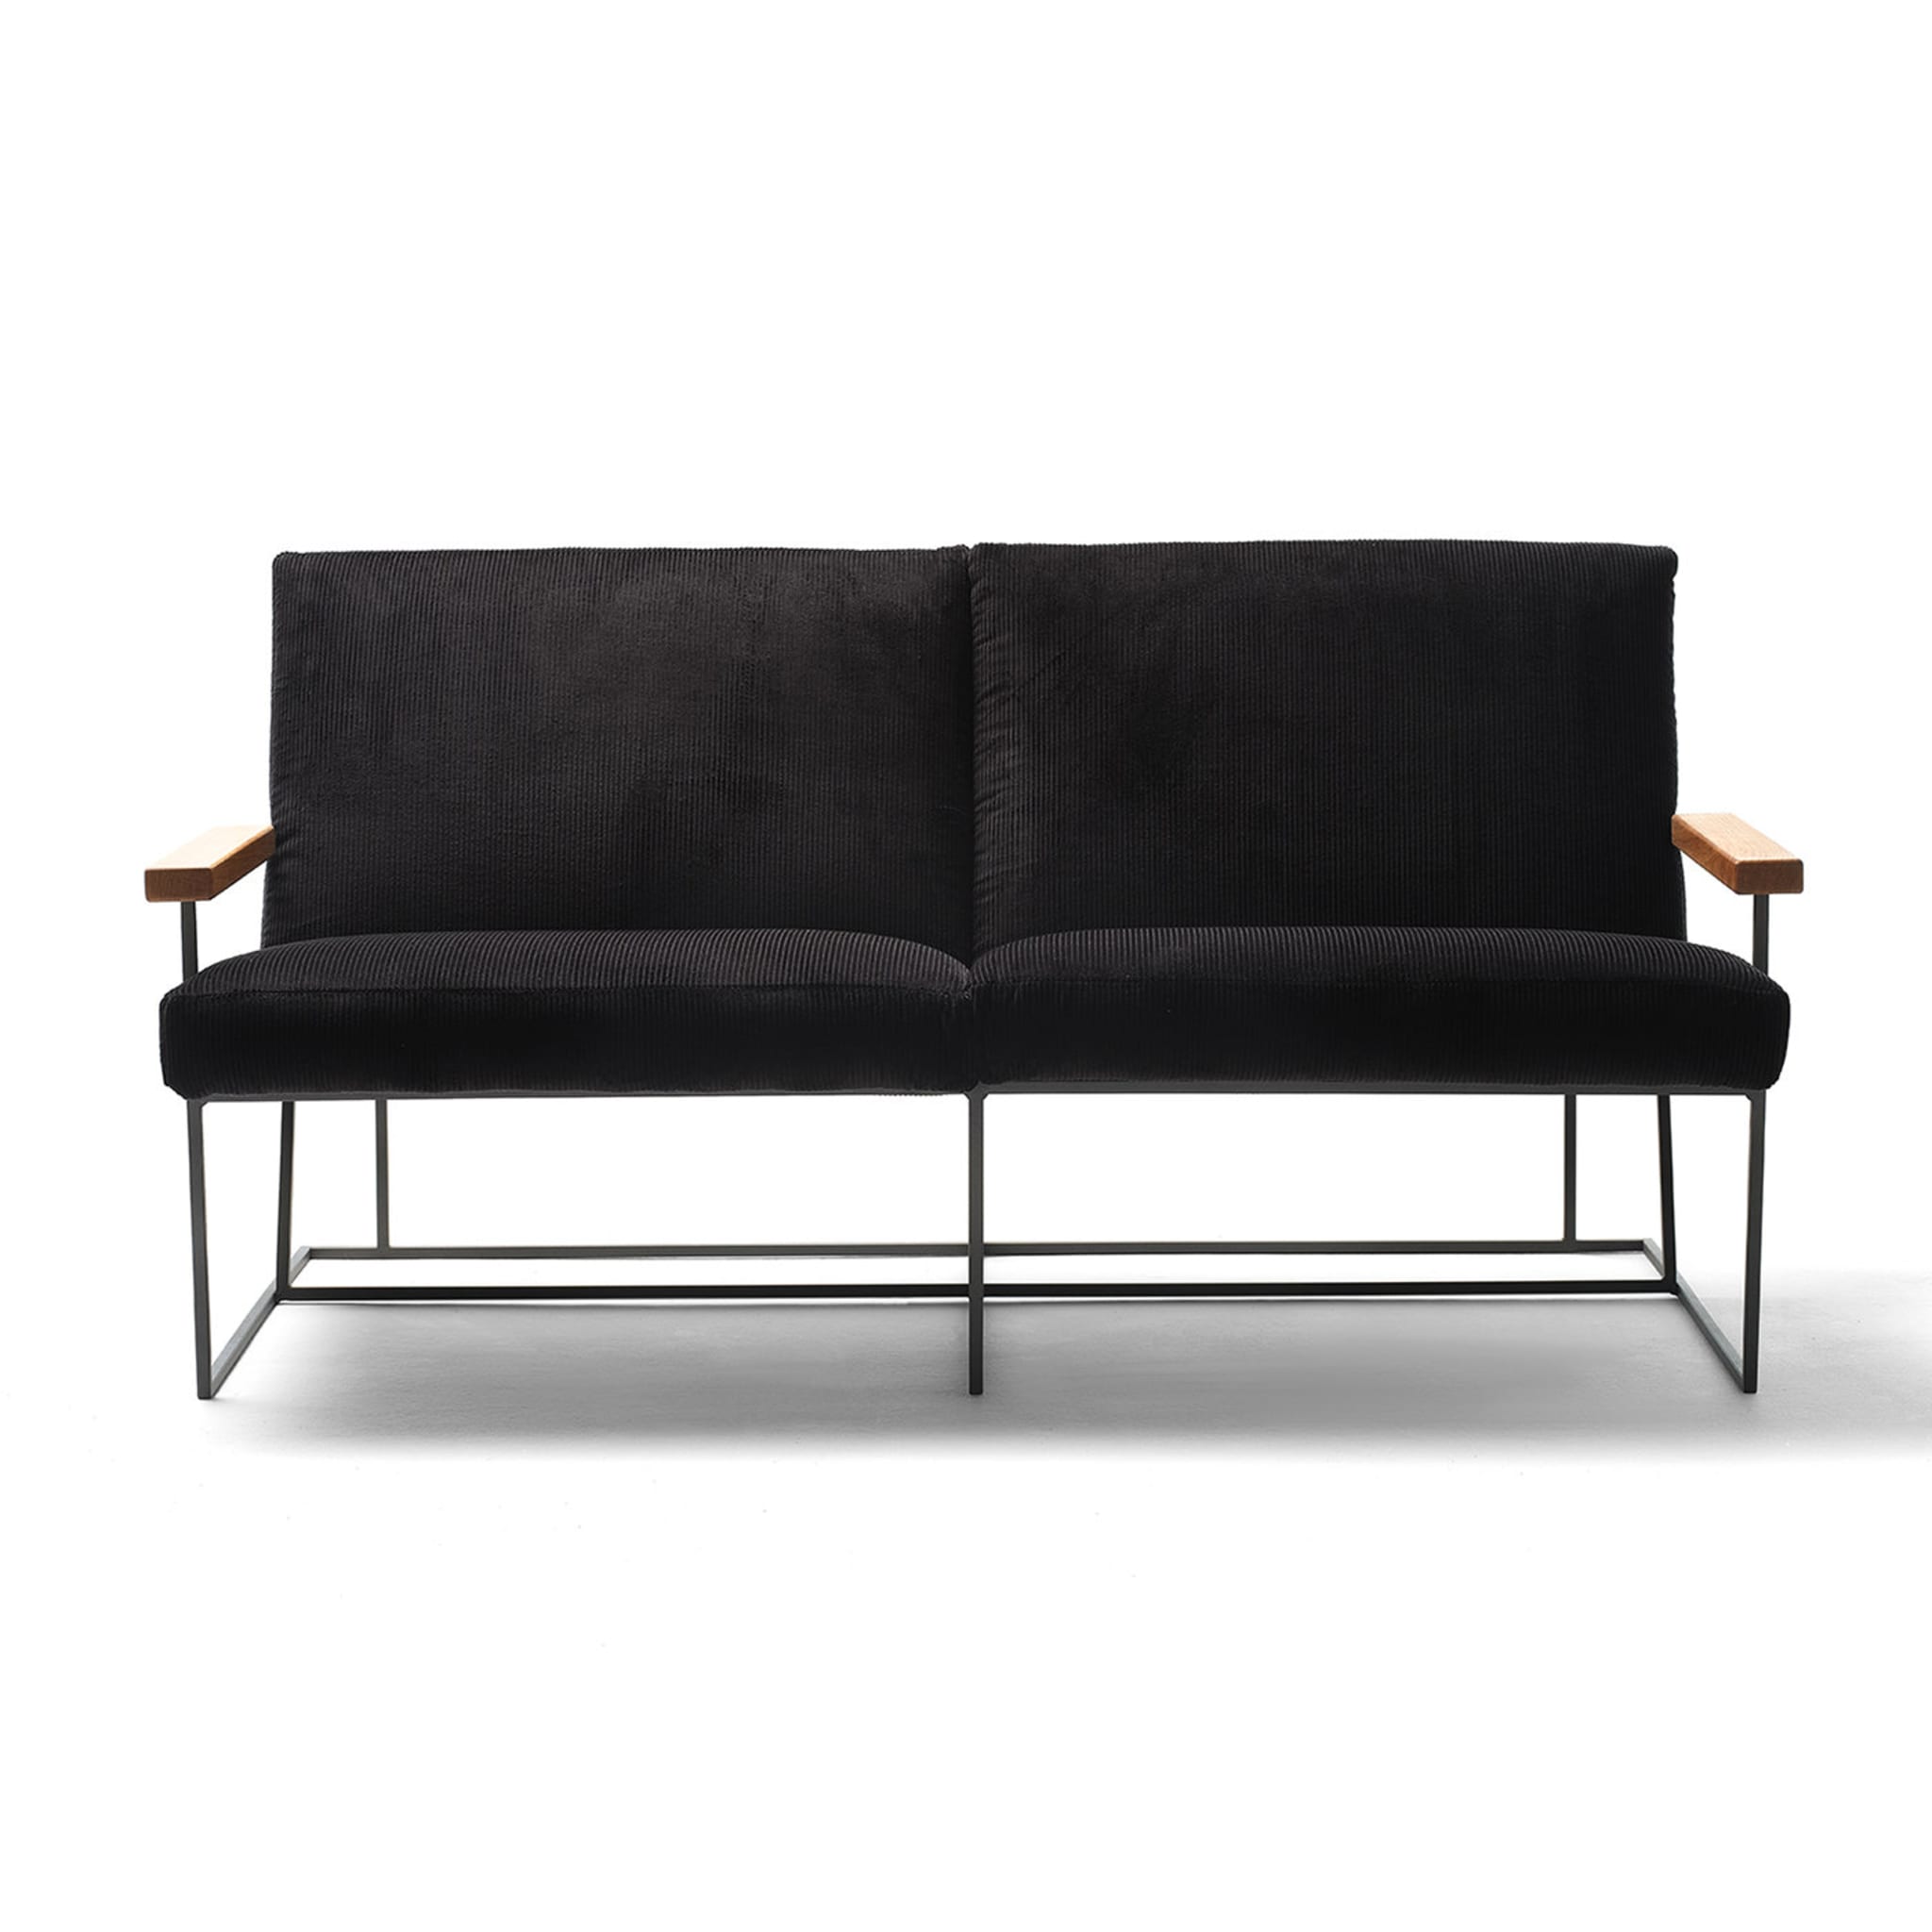 Gotham Schwarzes 2-sitzer sofa von Federico Carandini - Alternative Ansicht 1